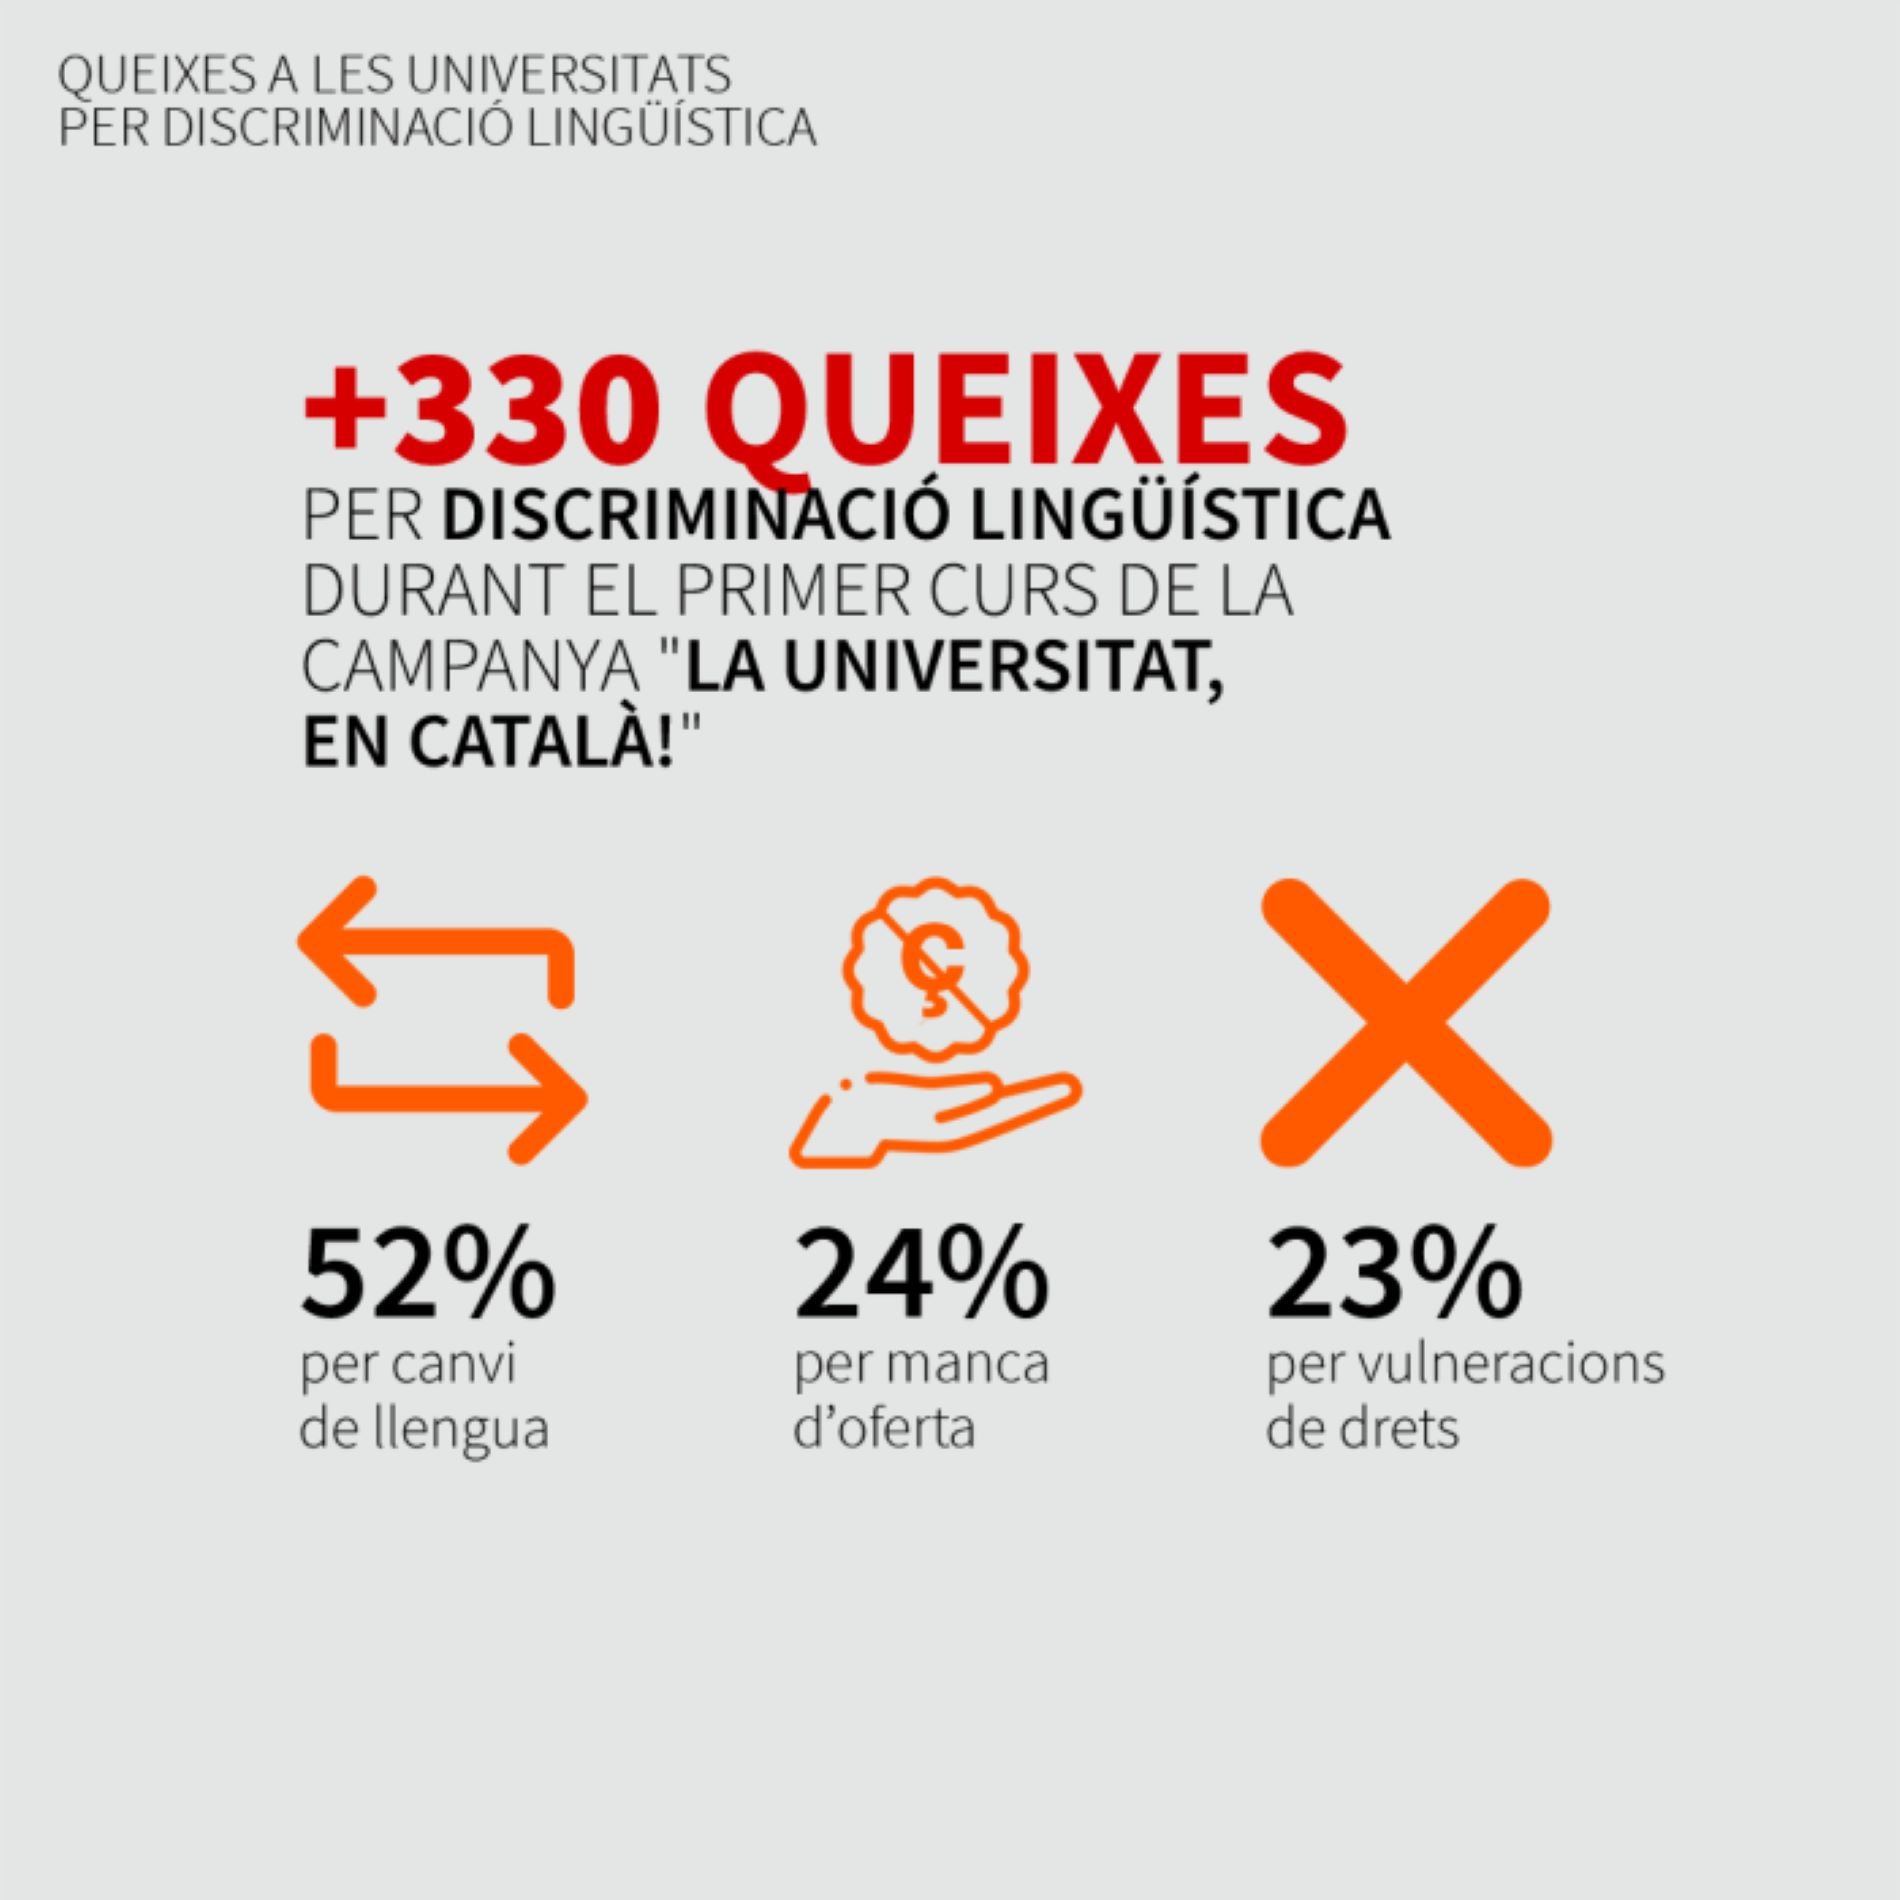 Queixes per discriminacio linguistica catala universitats / Plataforma per la Llengua